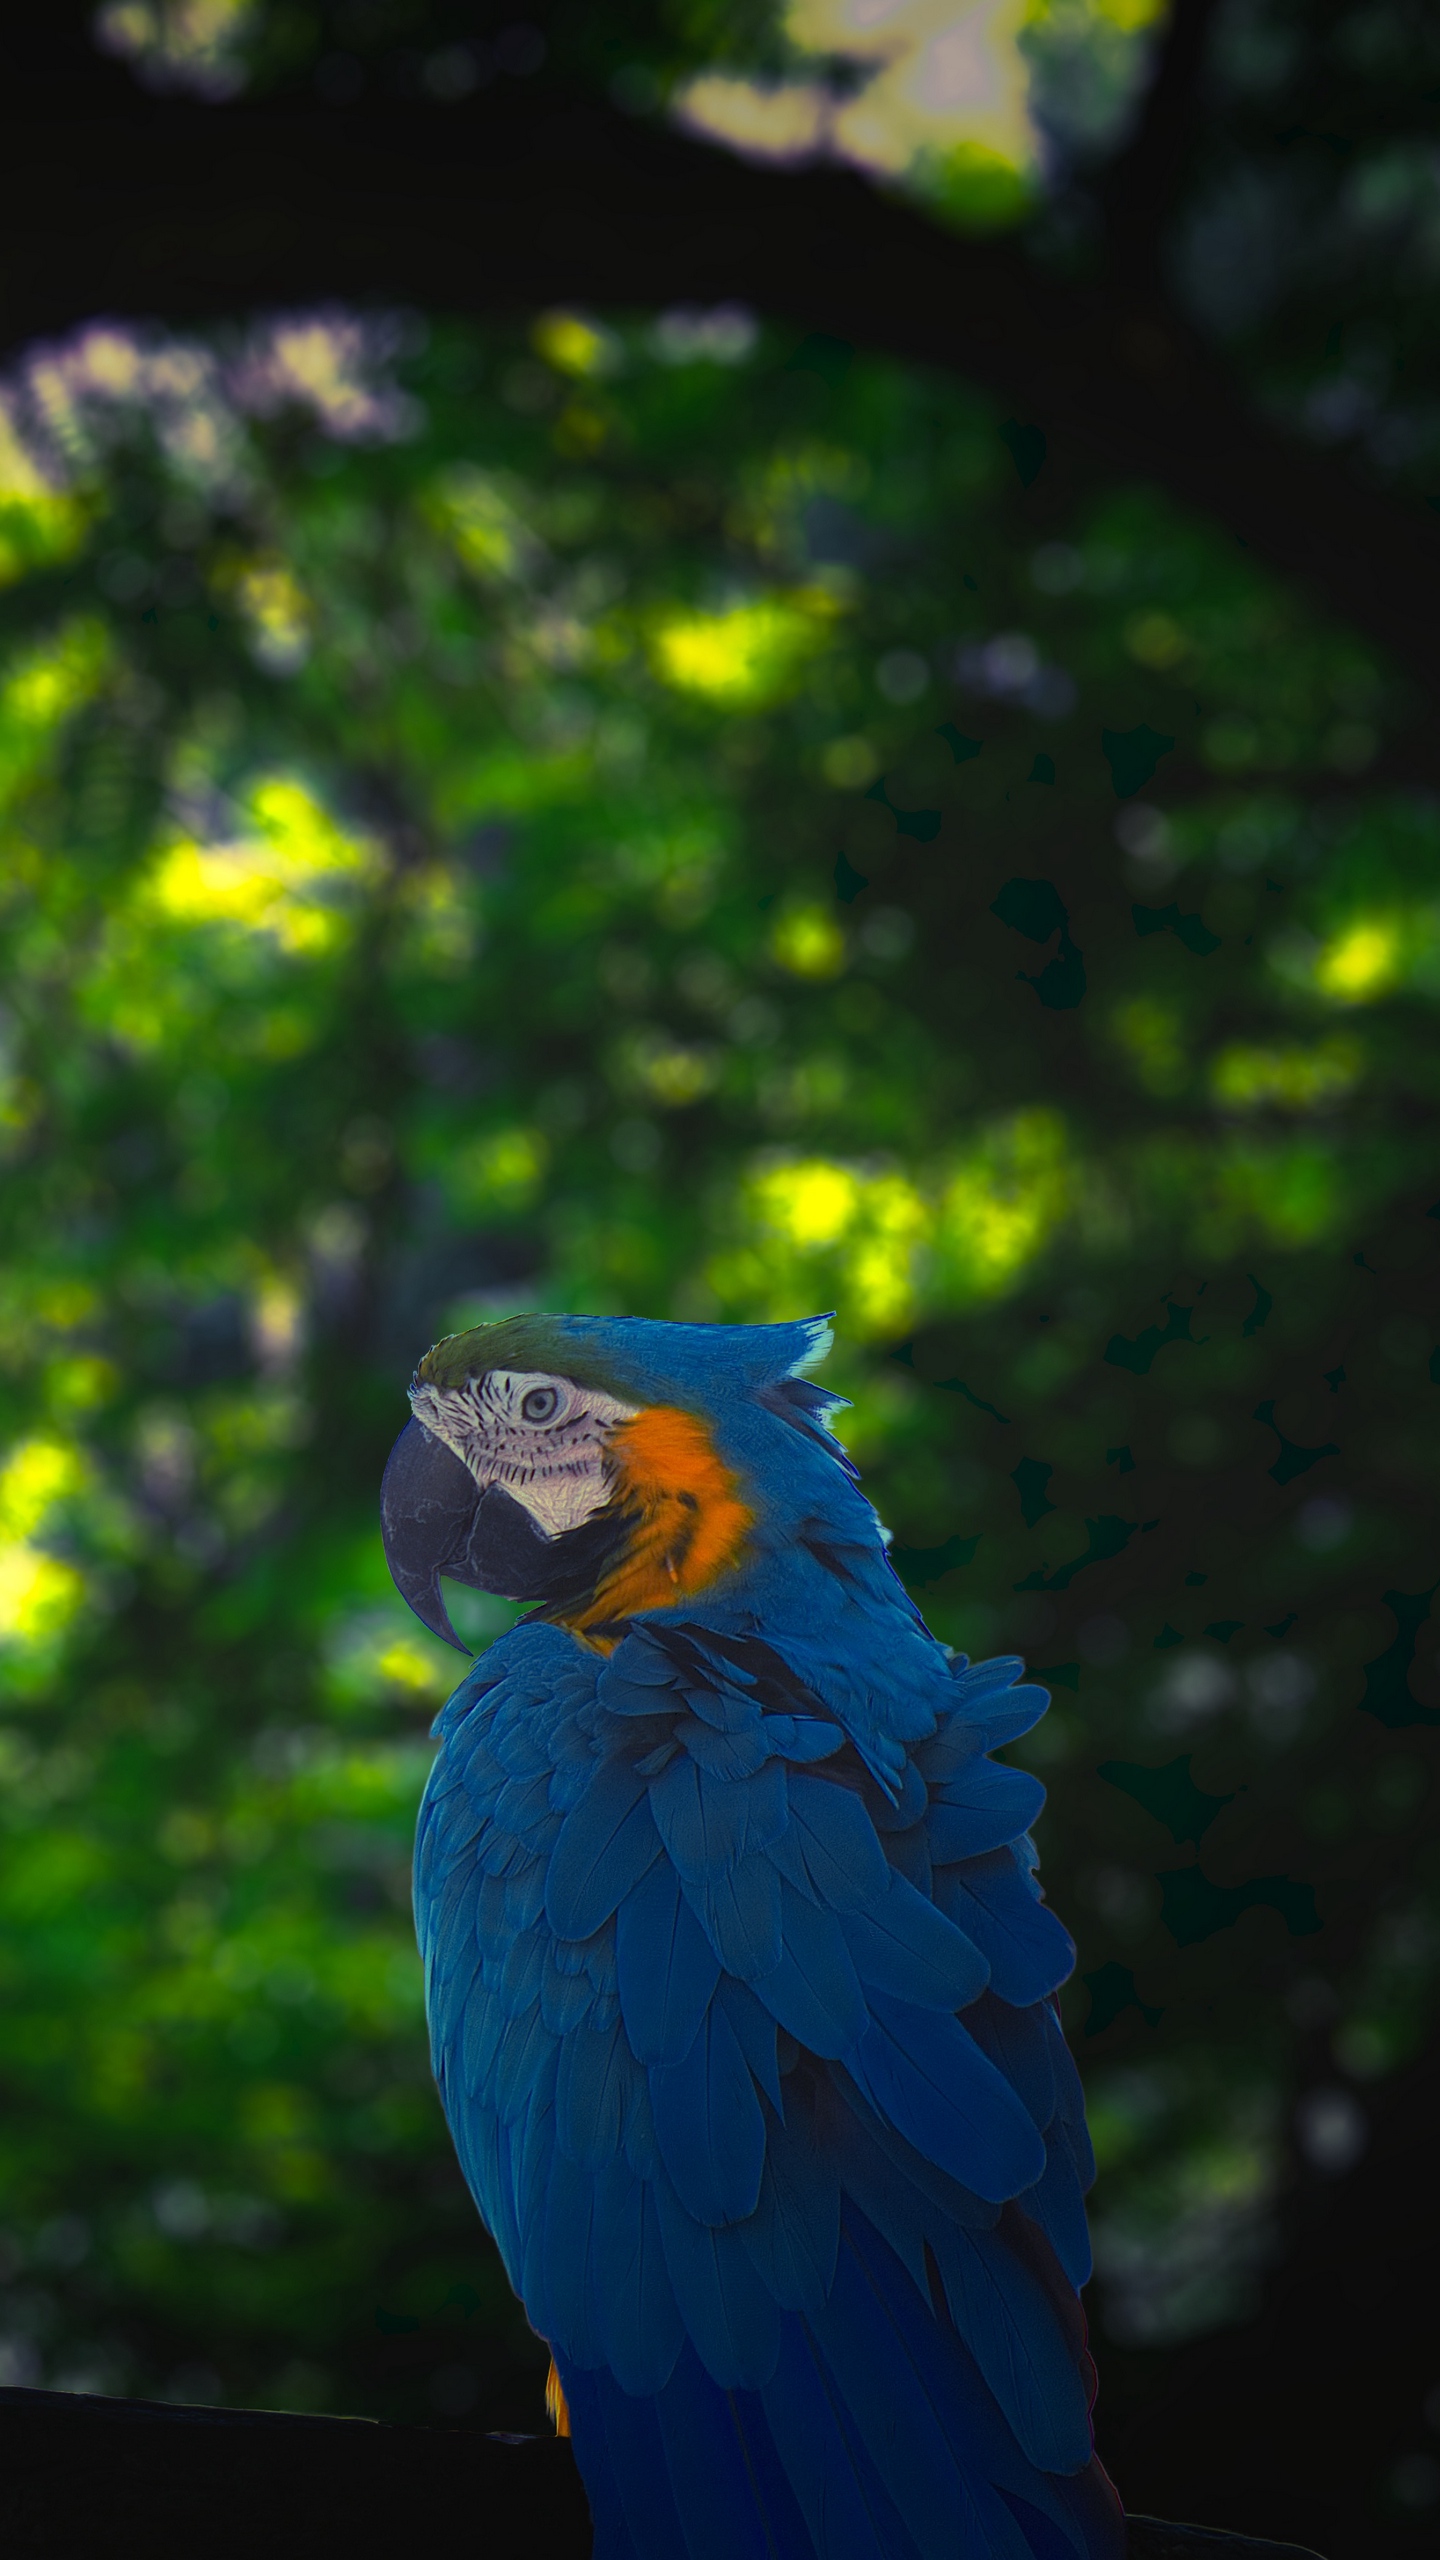 Wallpaper Macaw, Parrot, Bird, Jungle - Macaw Parrot Blue Iphone X -  1440x2560 Wallpaper 